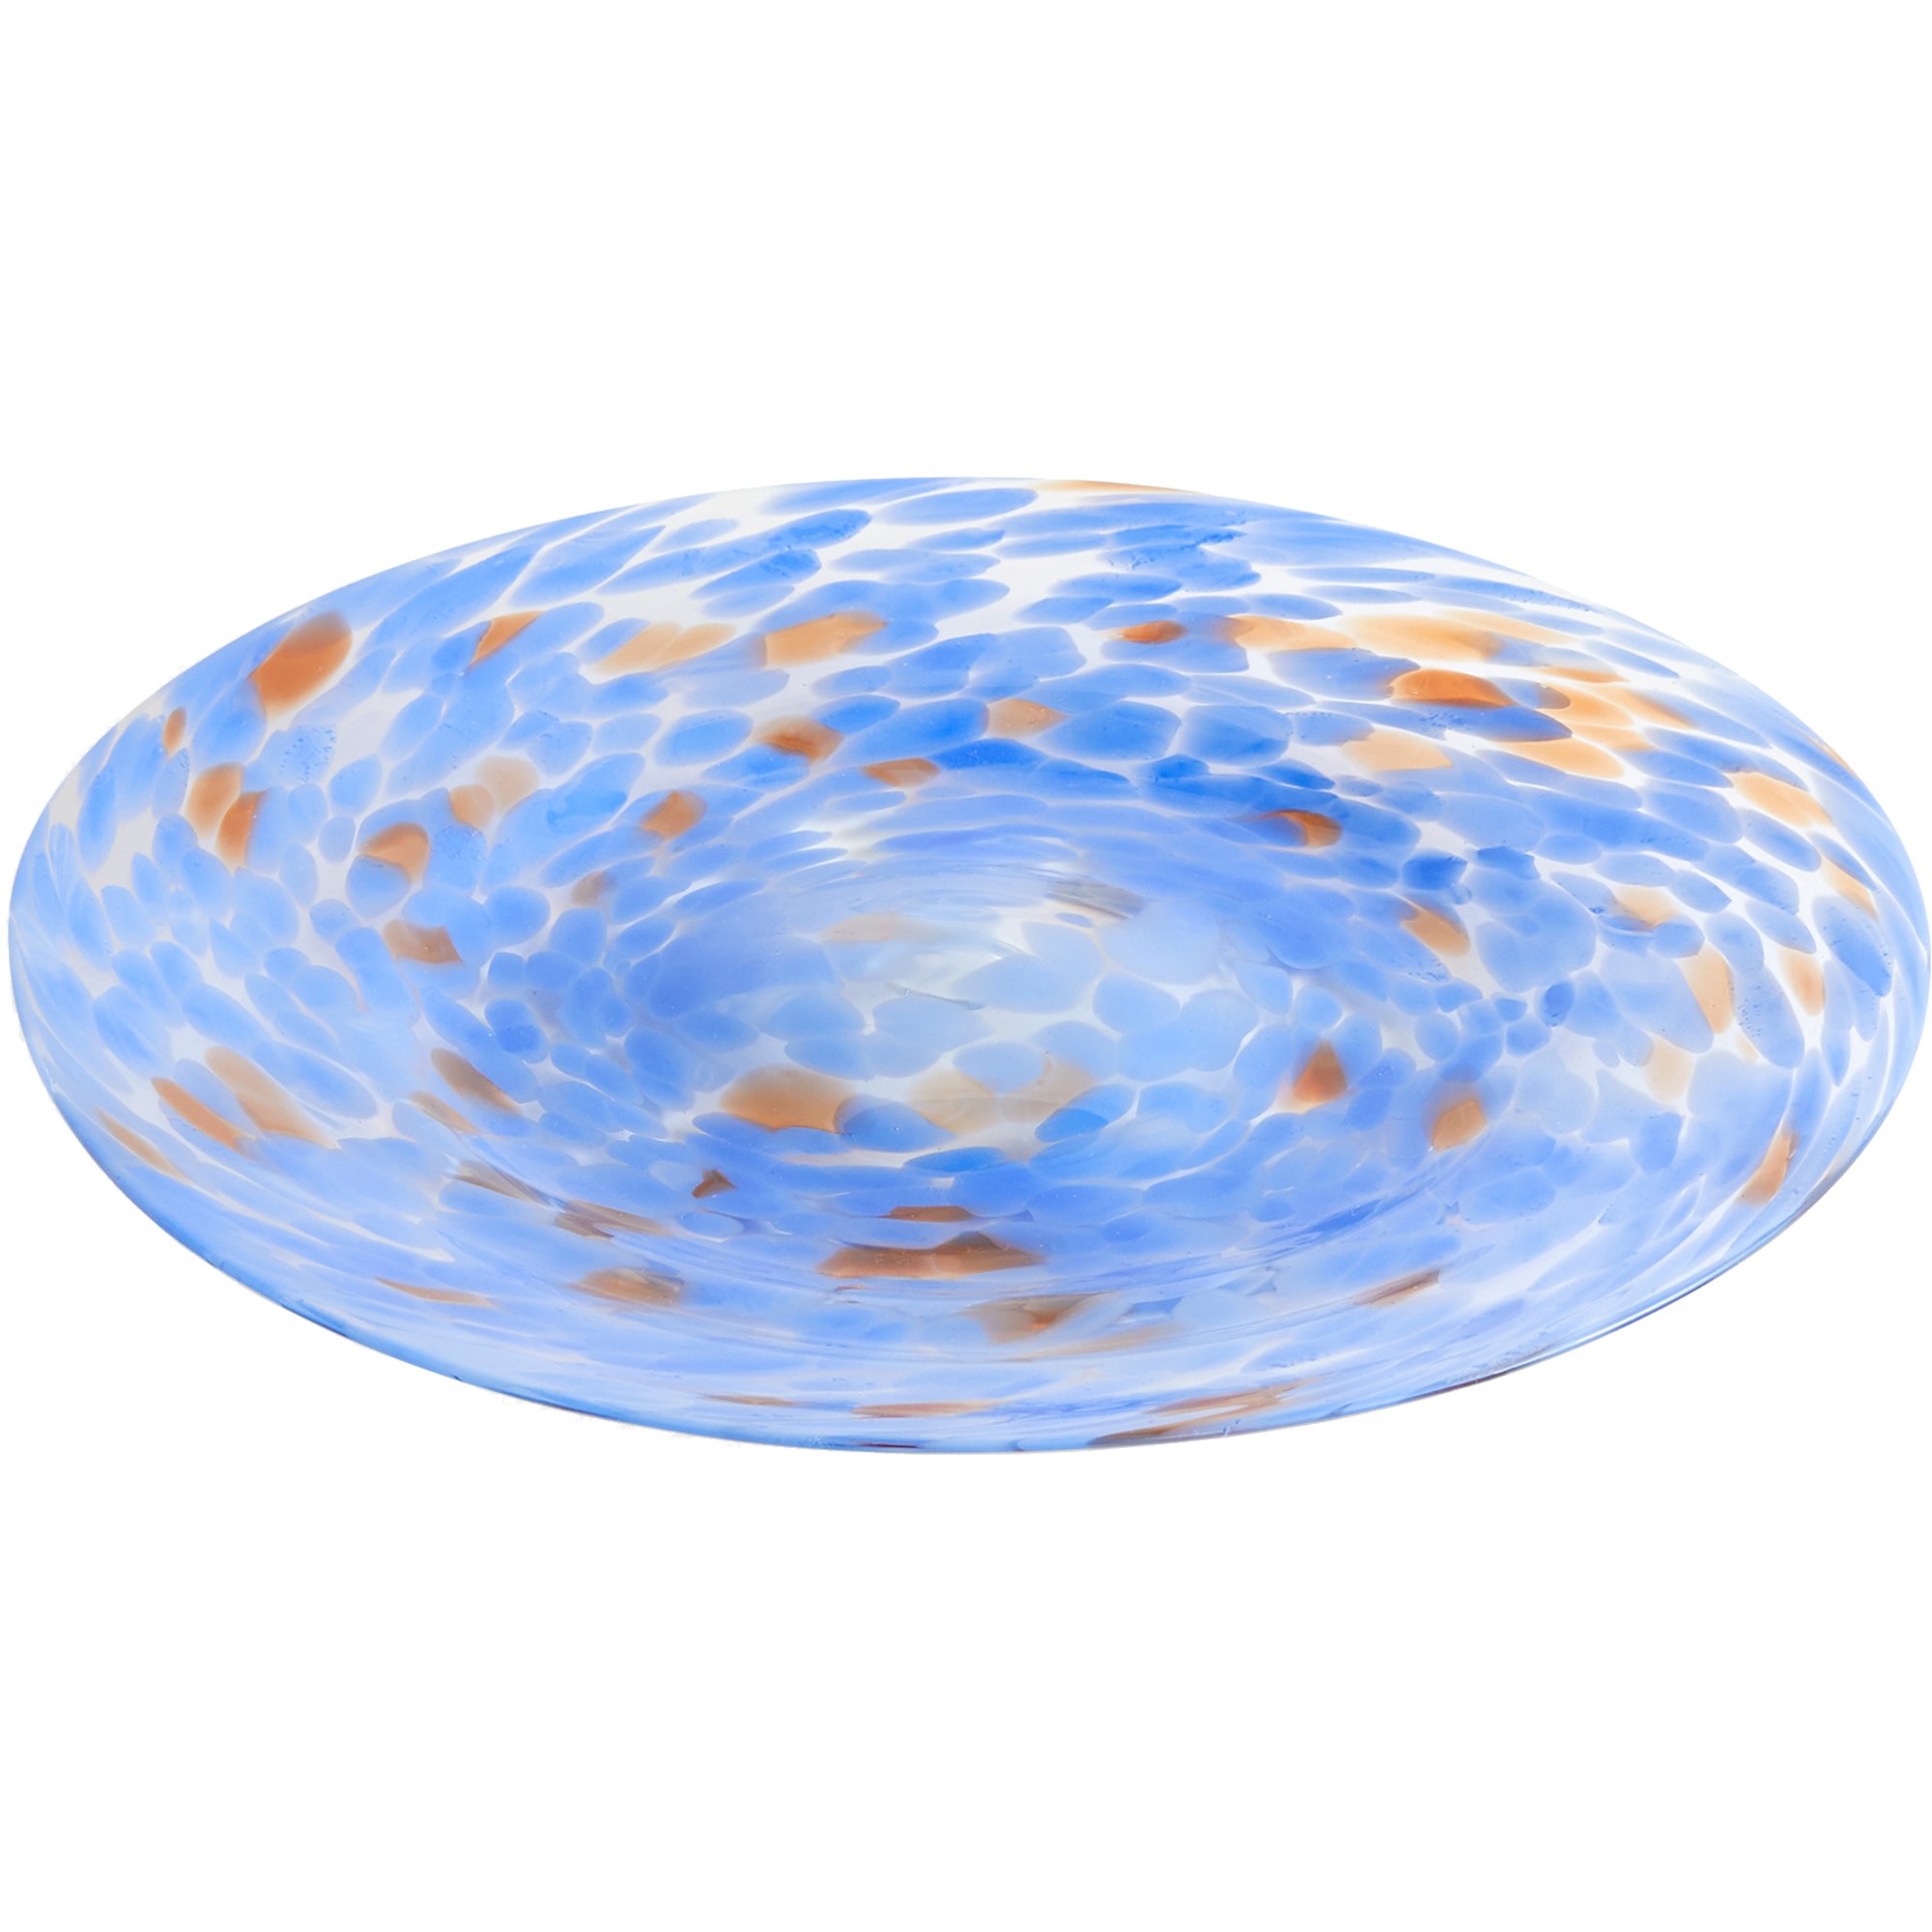 HAY Splash Platter serveringsfad, 32 cm, blue